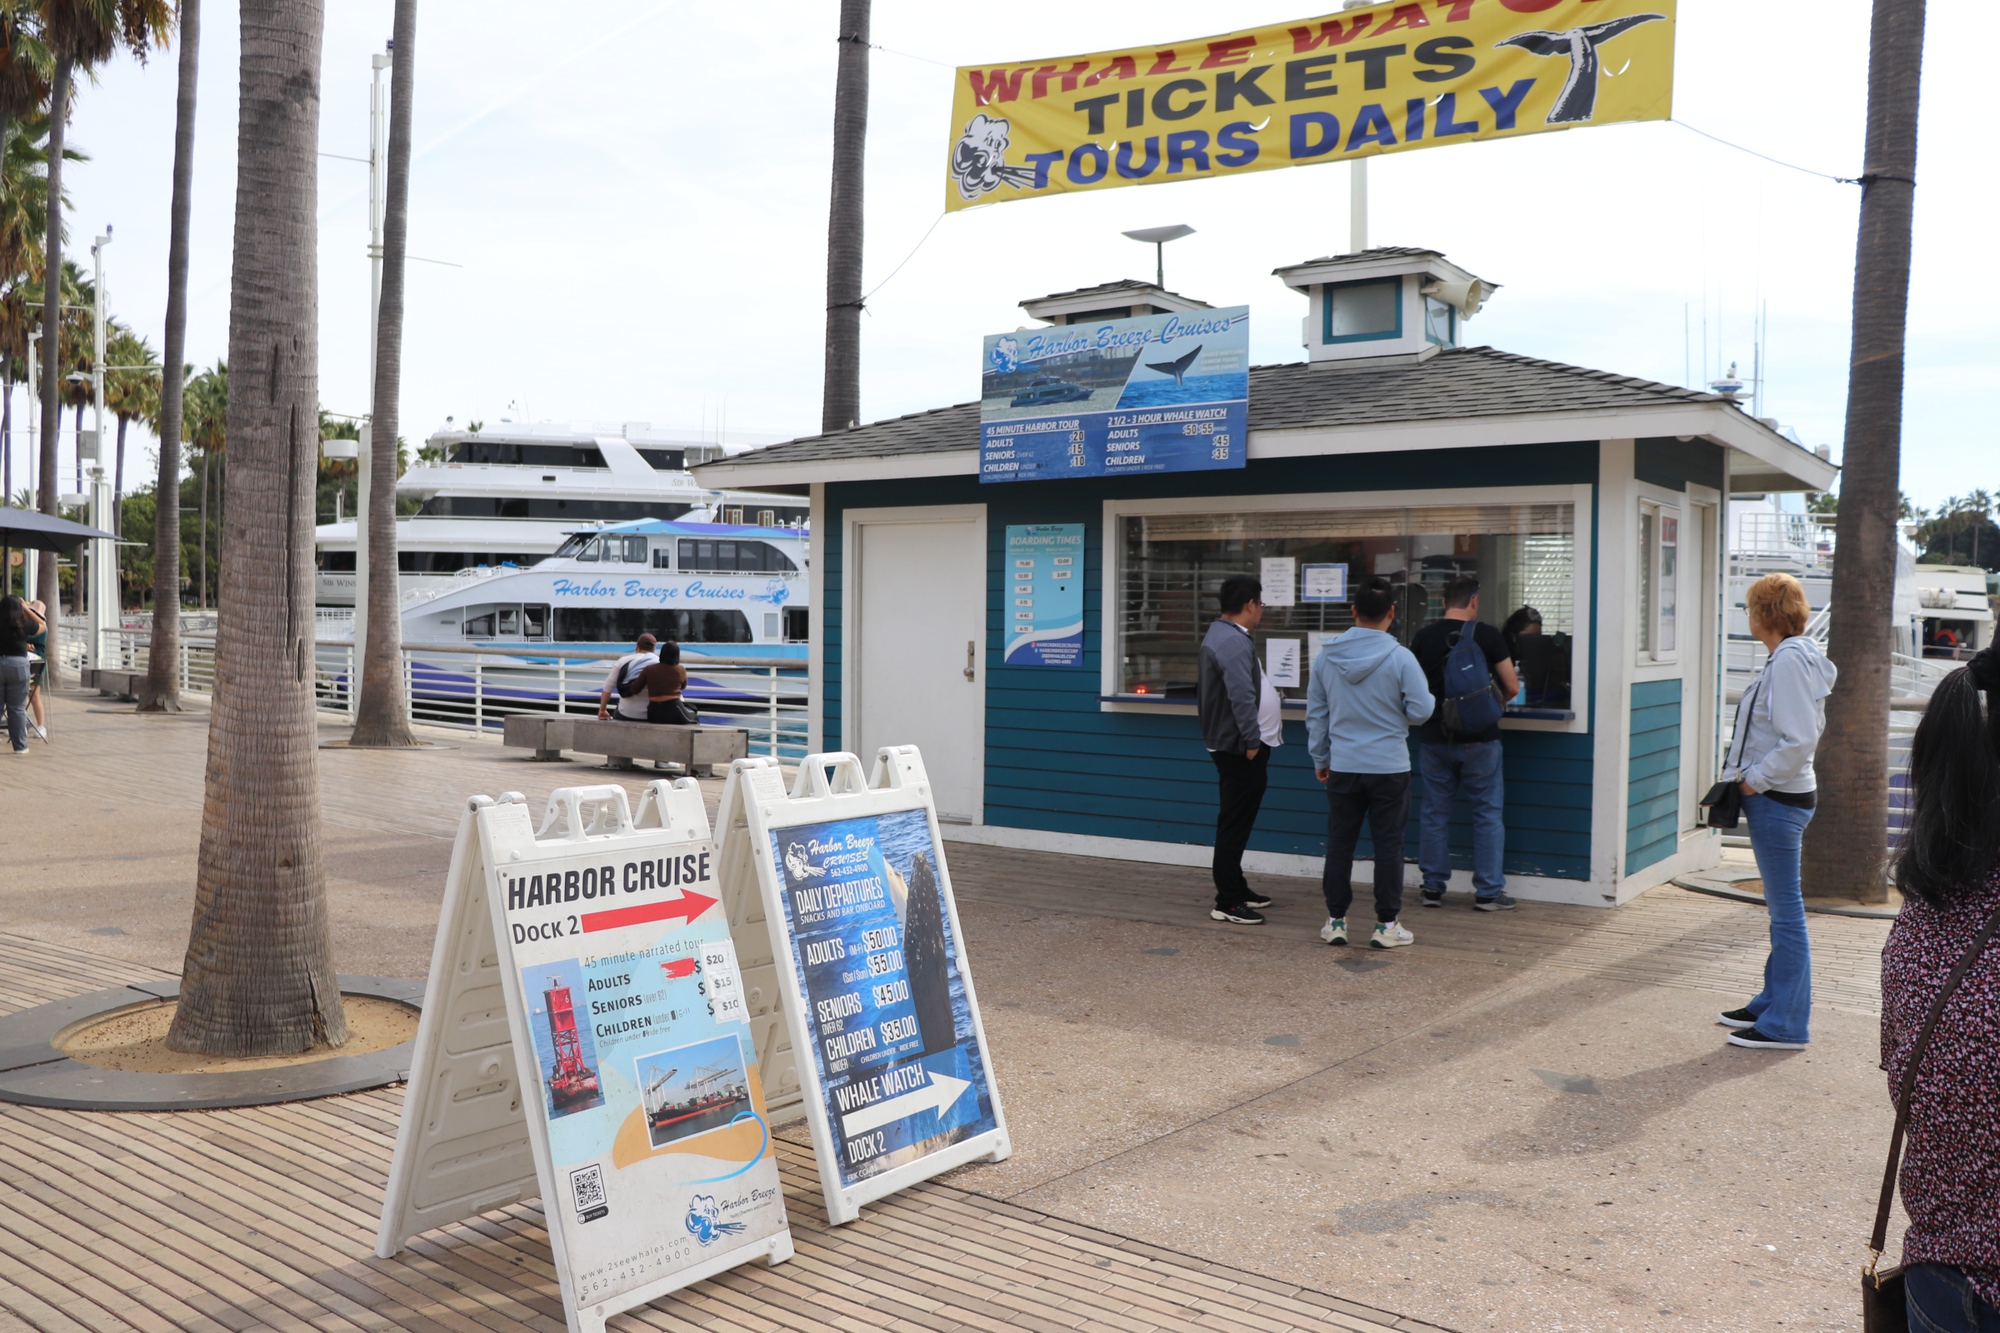 Tham quan biển Long Beach mùa vắng khách ở Mỹ rất đặc biệt - Ảnh 1.